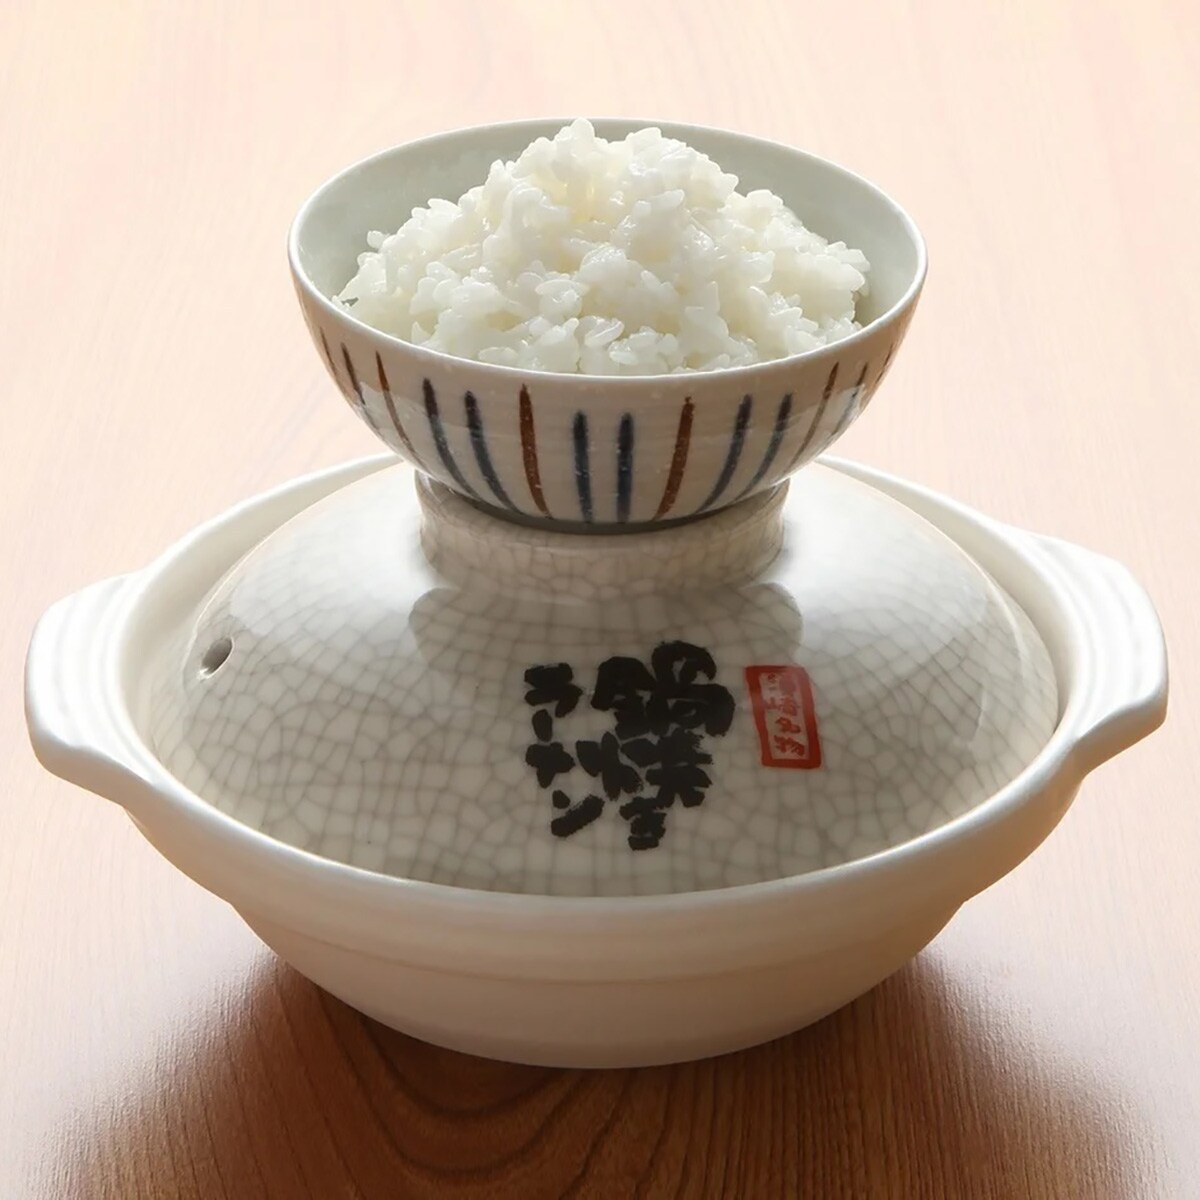 ほとんどの方がごはんも一緒にオーダーするとのこと。香りのあるお米「仁井田産の香り米」を使用